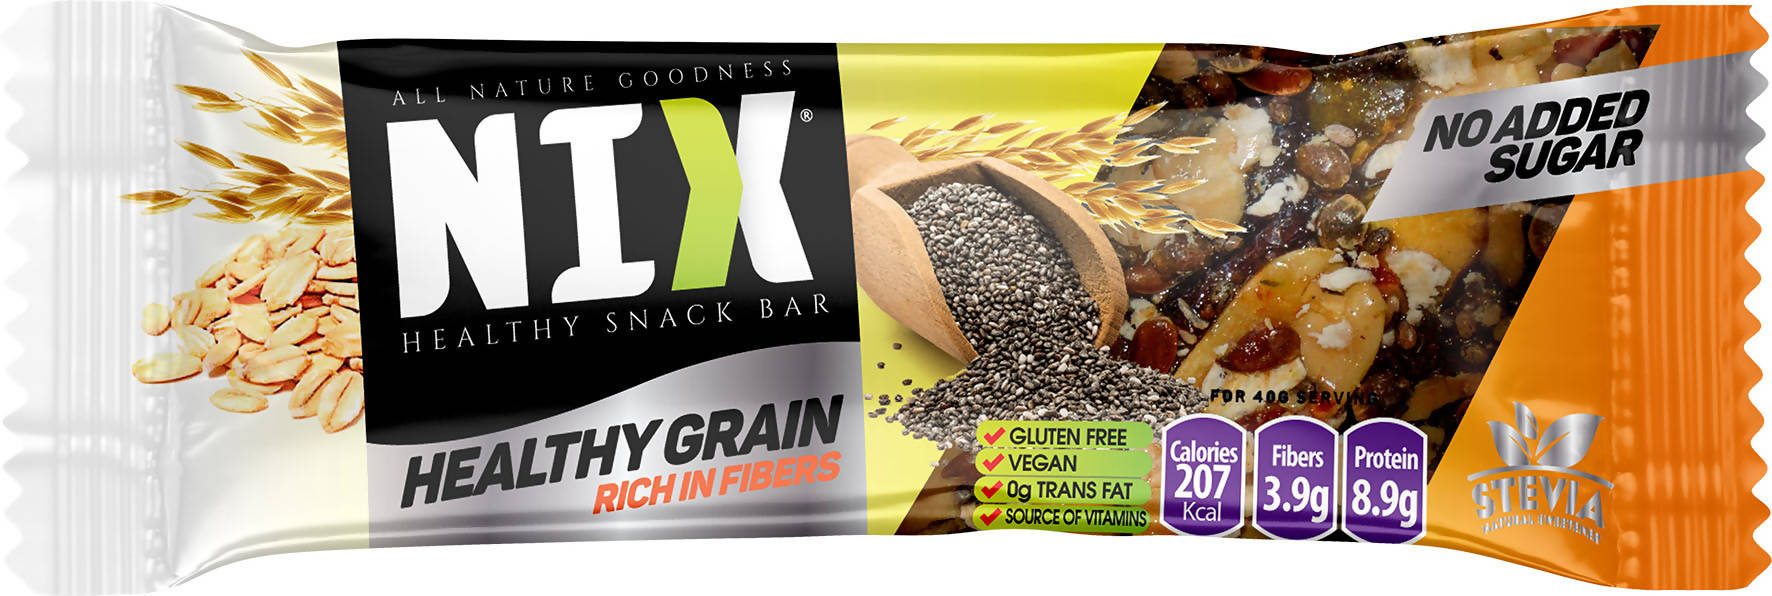 NIX Healthy Grain Gluten Free vegan Stevia